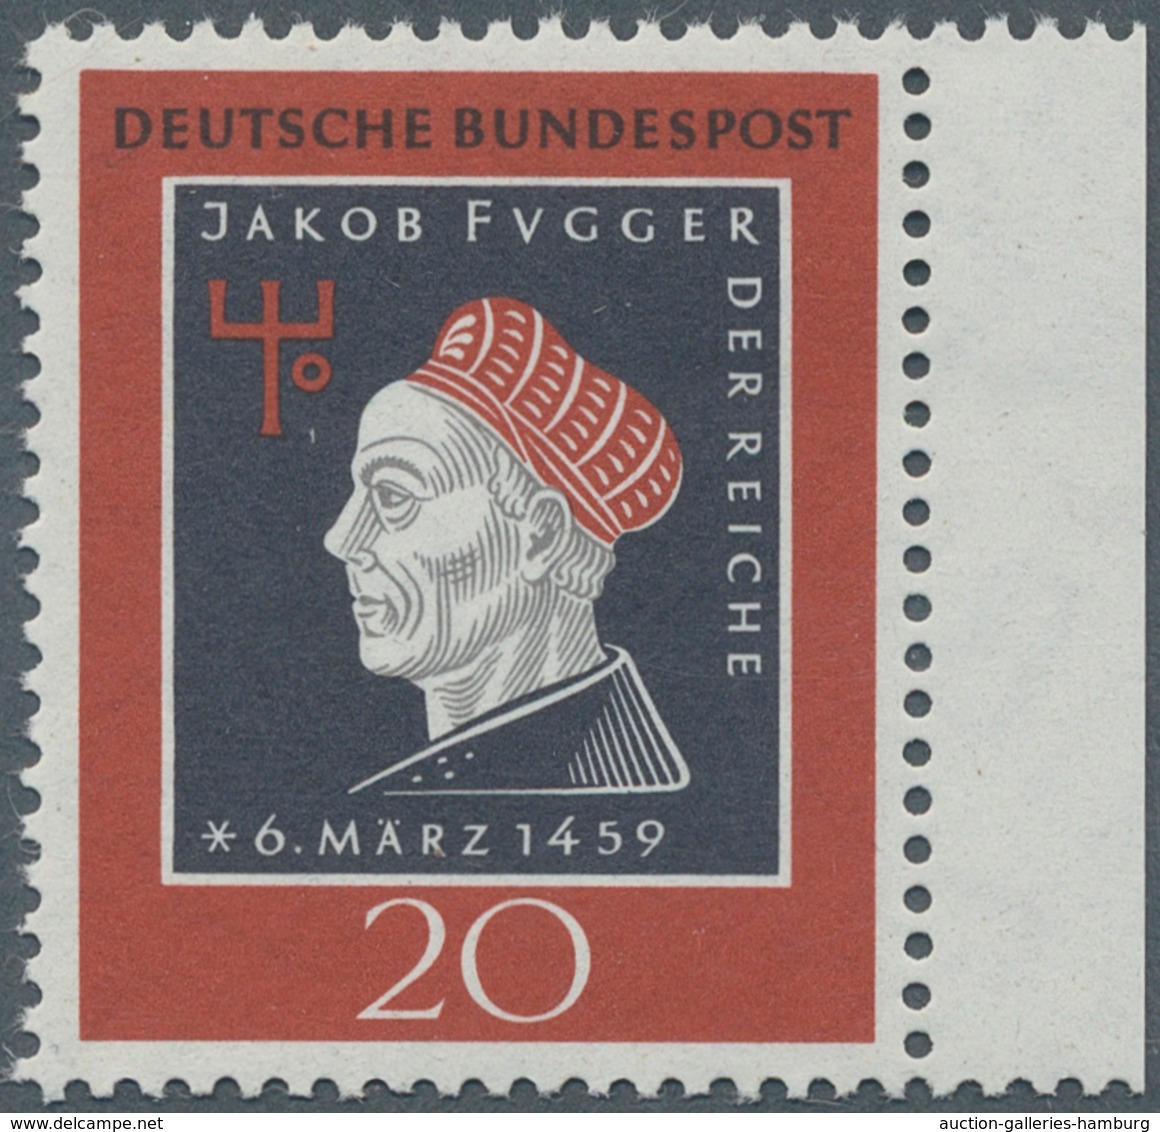 Bundesrepublik Deutschland: 1959, 20 Pf "500. Geburtstag V. J.Fugger" Mit Fehlendem Unterdruck (Farb - Cartas & Documentos